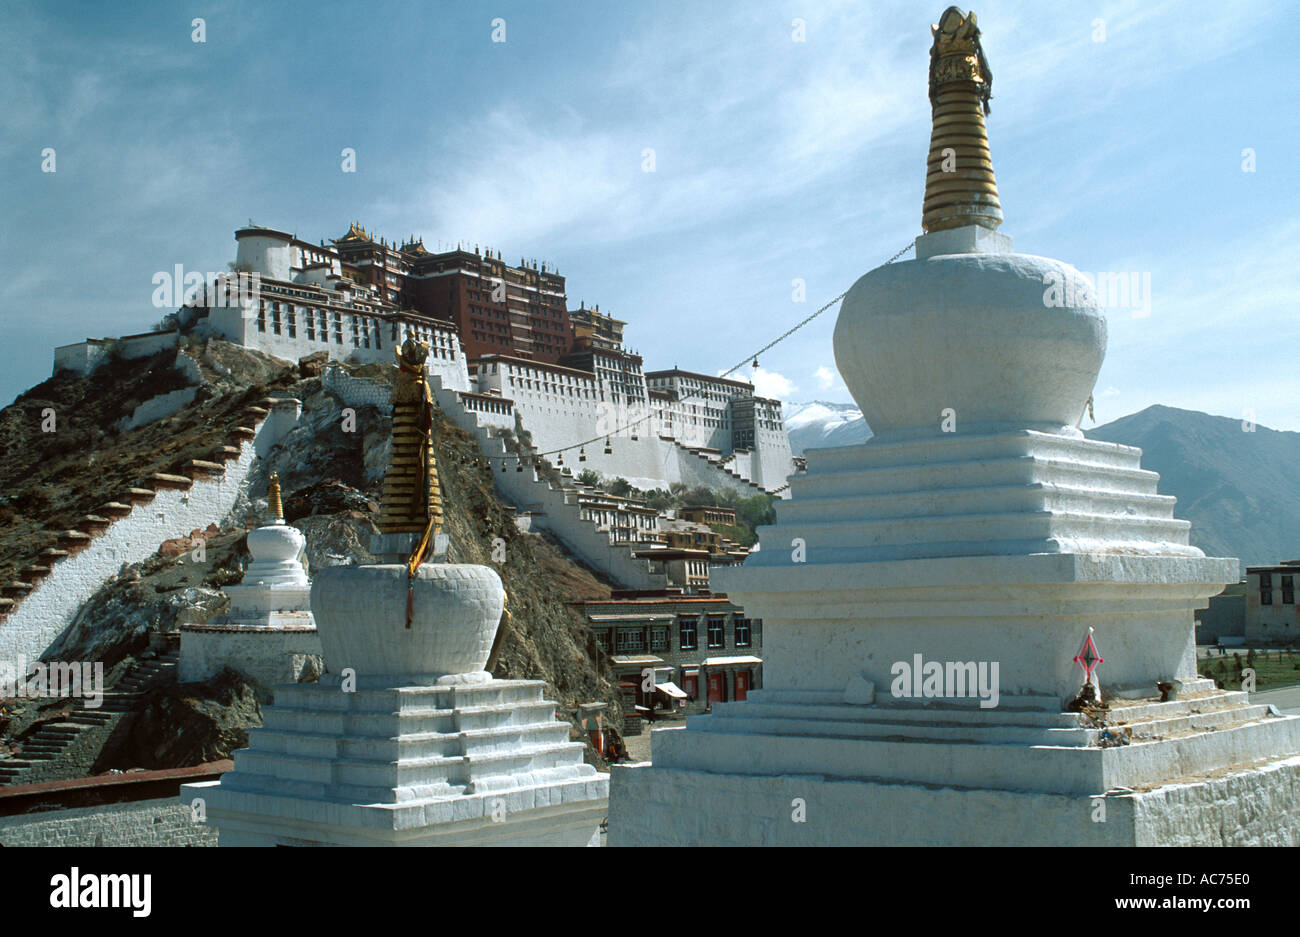 Les STUPAS construits récemment remplacer ceux détruits par les Chinois près de Lhassa au Tibet le palais du Potala Banque D'Images